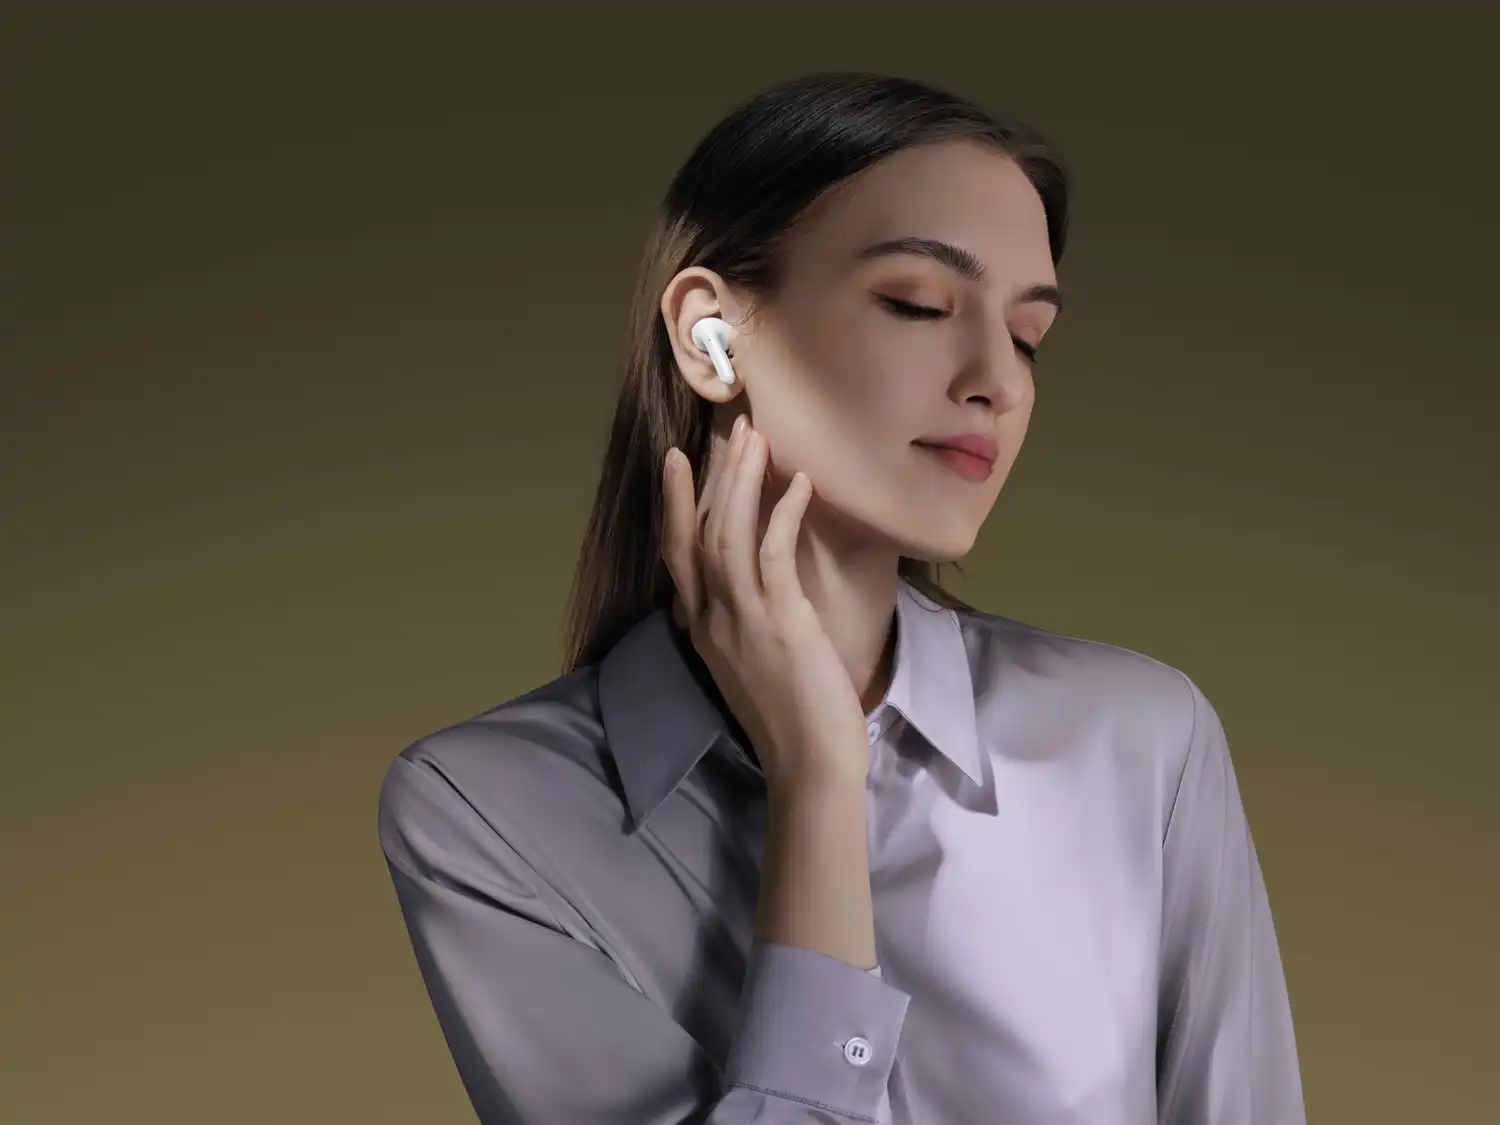 Audífonos: conoce la evolución de estos gadgets